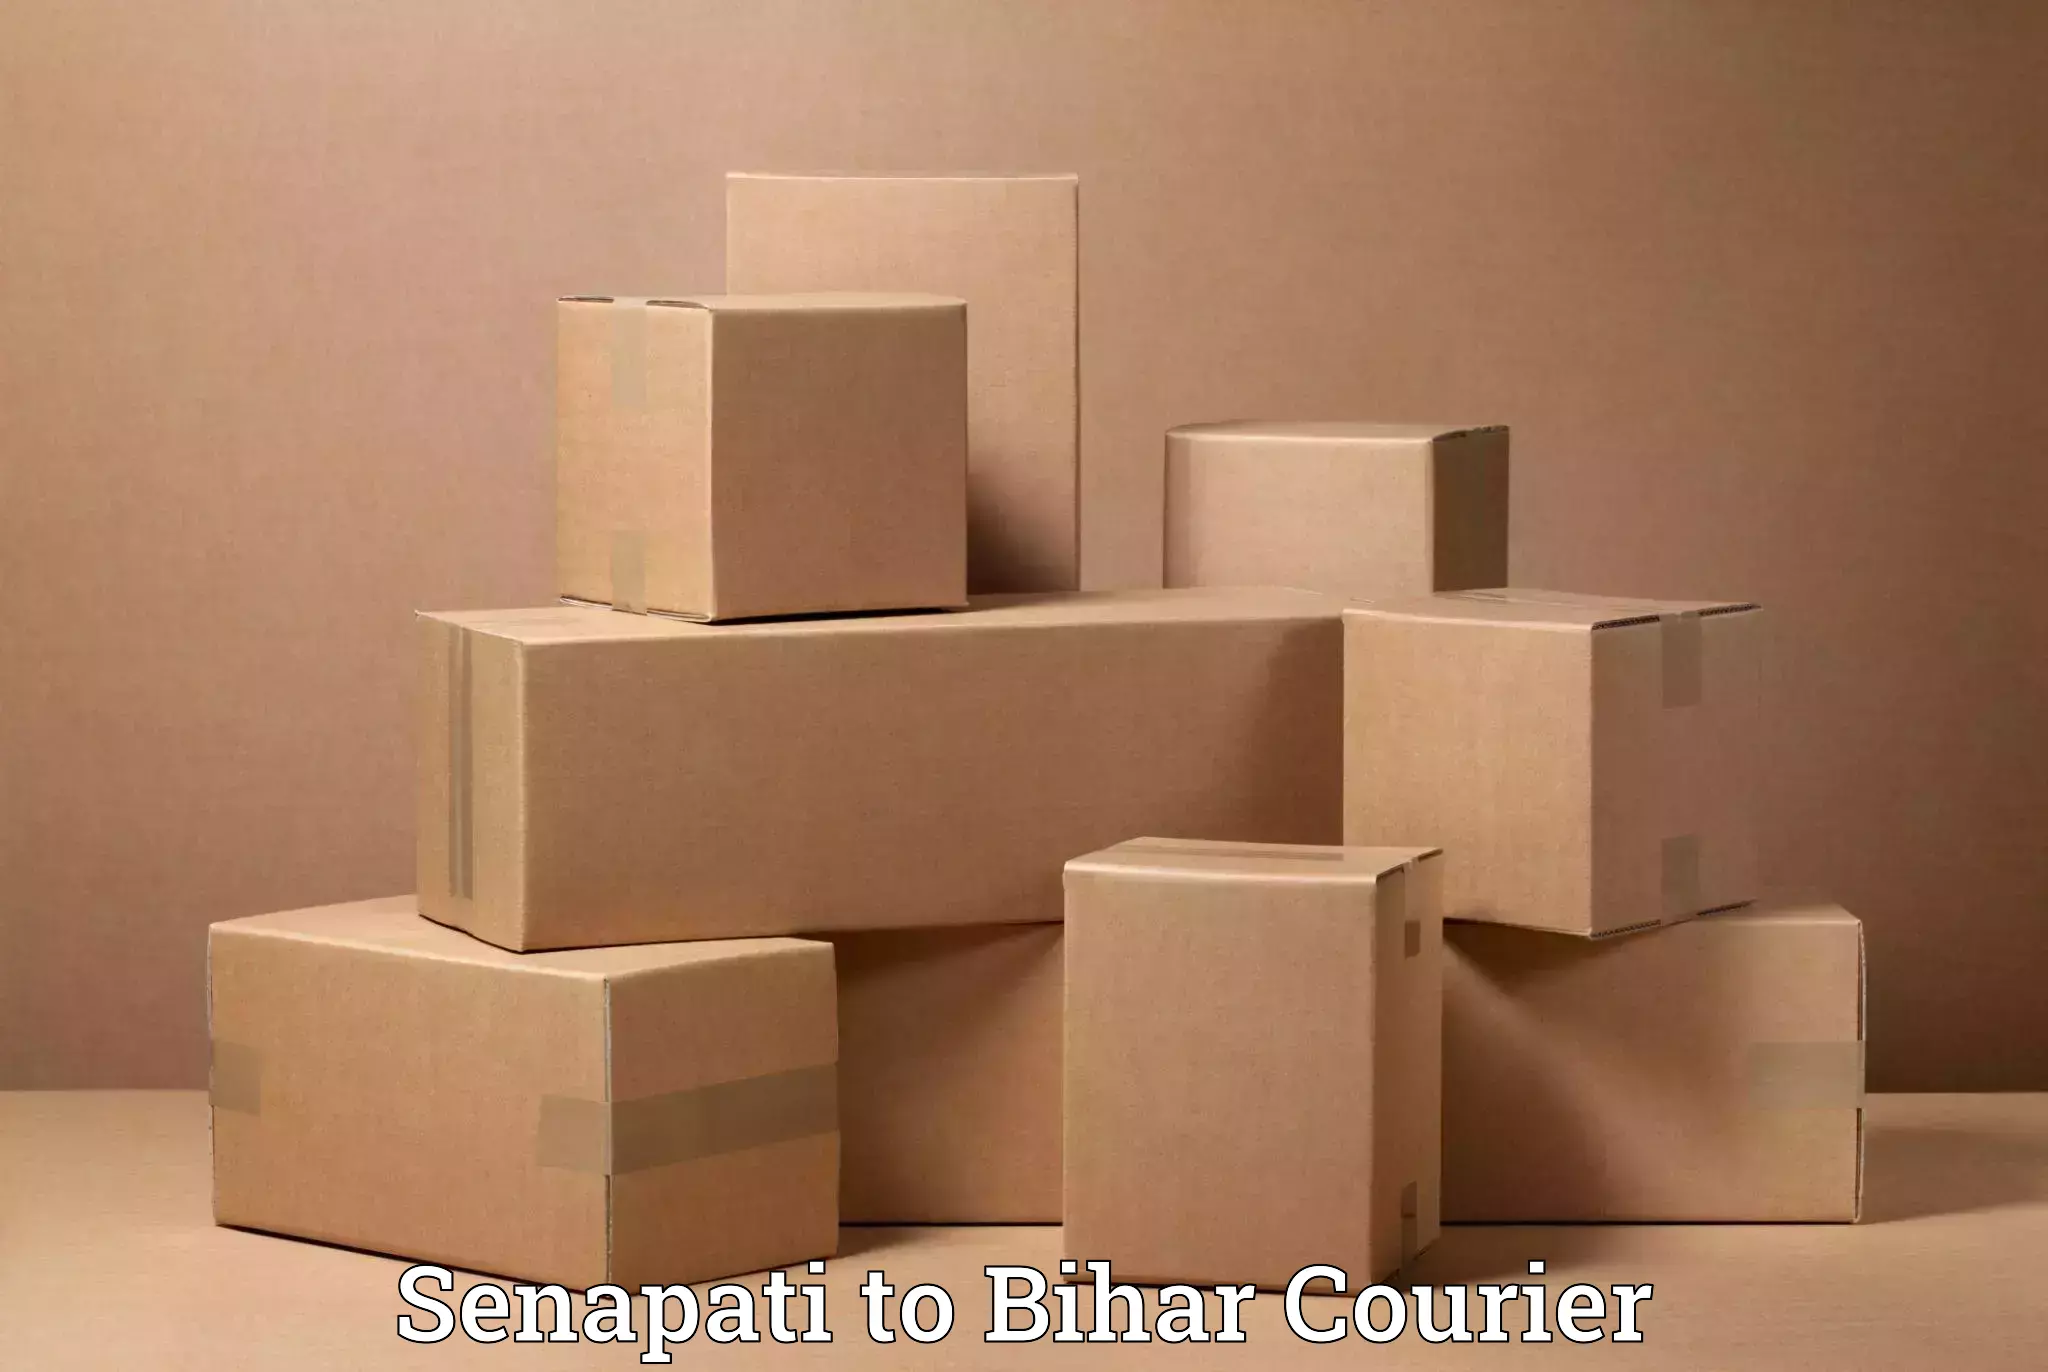 Reliable relocation services in Senapati to Bihar